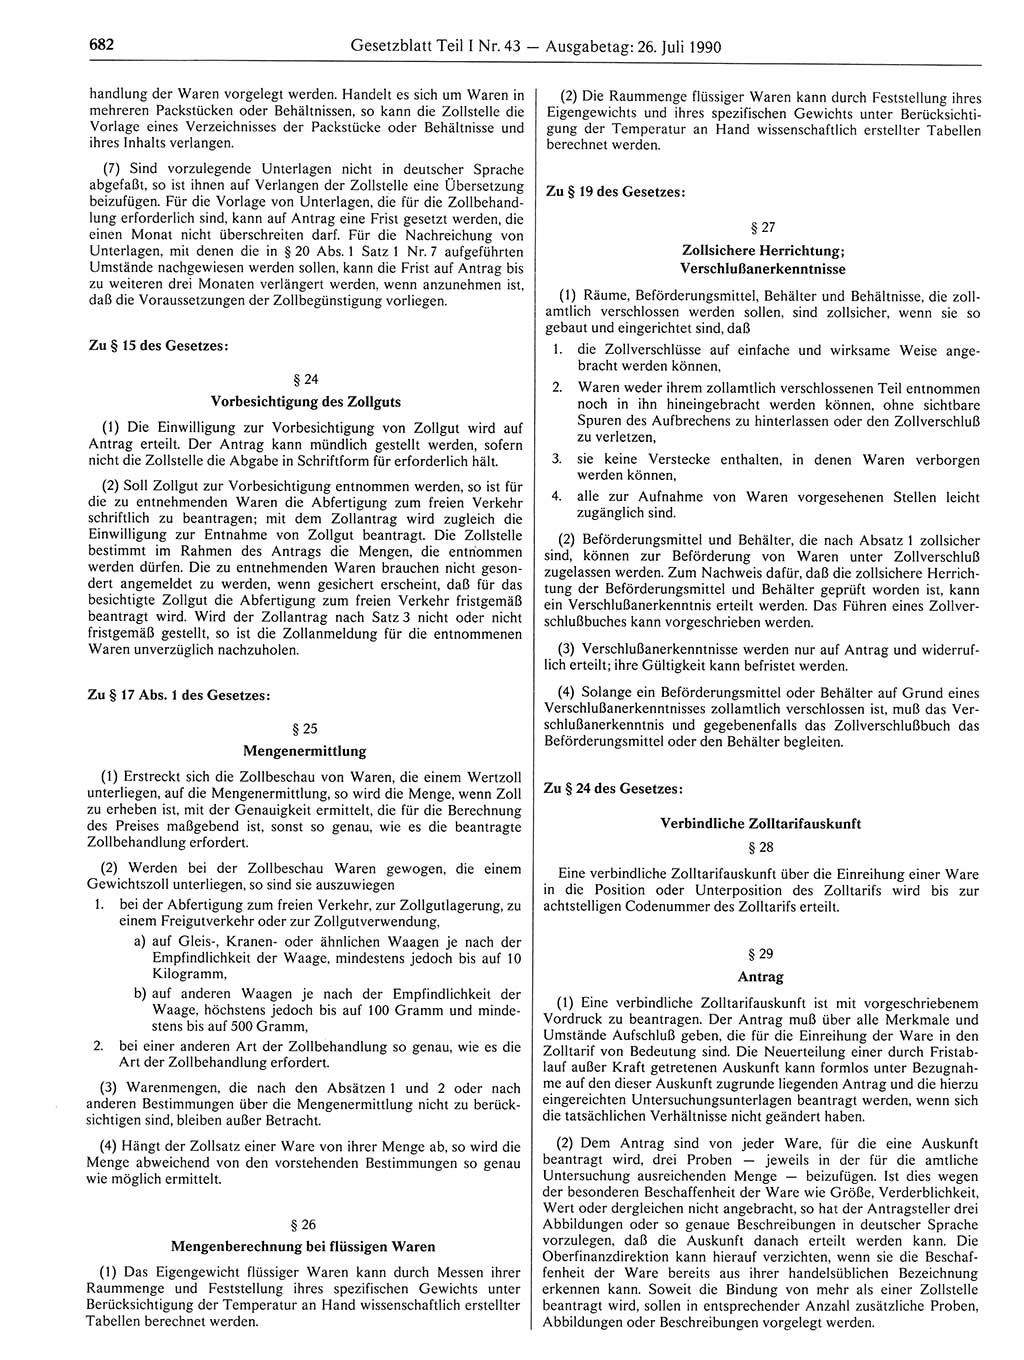 Gesetzblatt (GBl.) der Deutschen Demokratischen Republik (DDR) Teil Ⅰ 1990, Seite 682 (GBl. DDR Ⅰ 1990, S. 682)